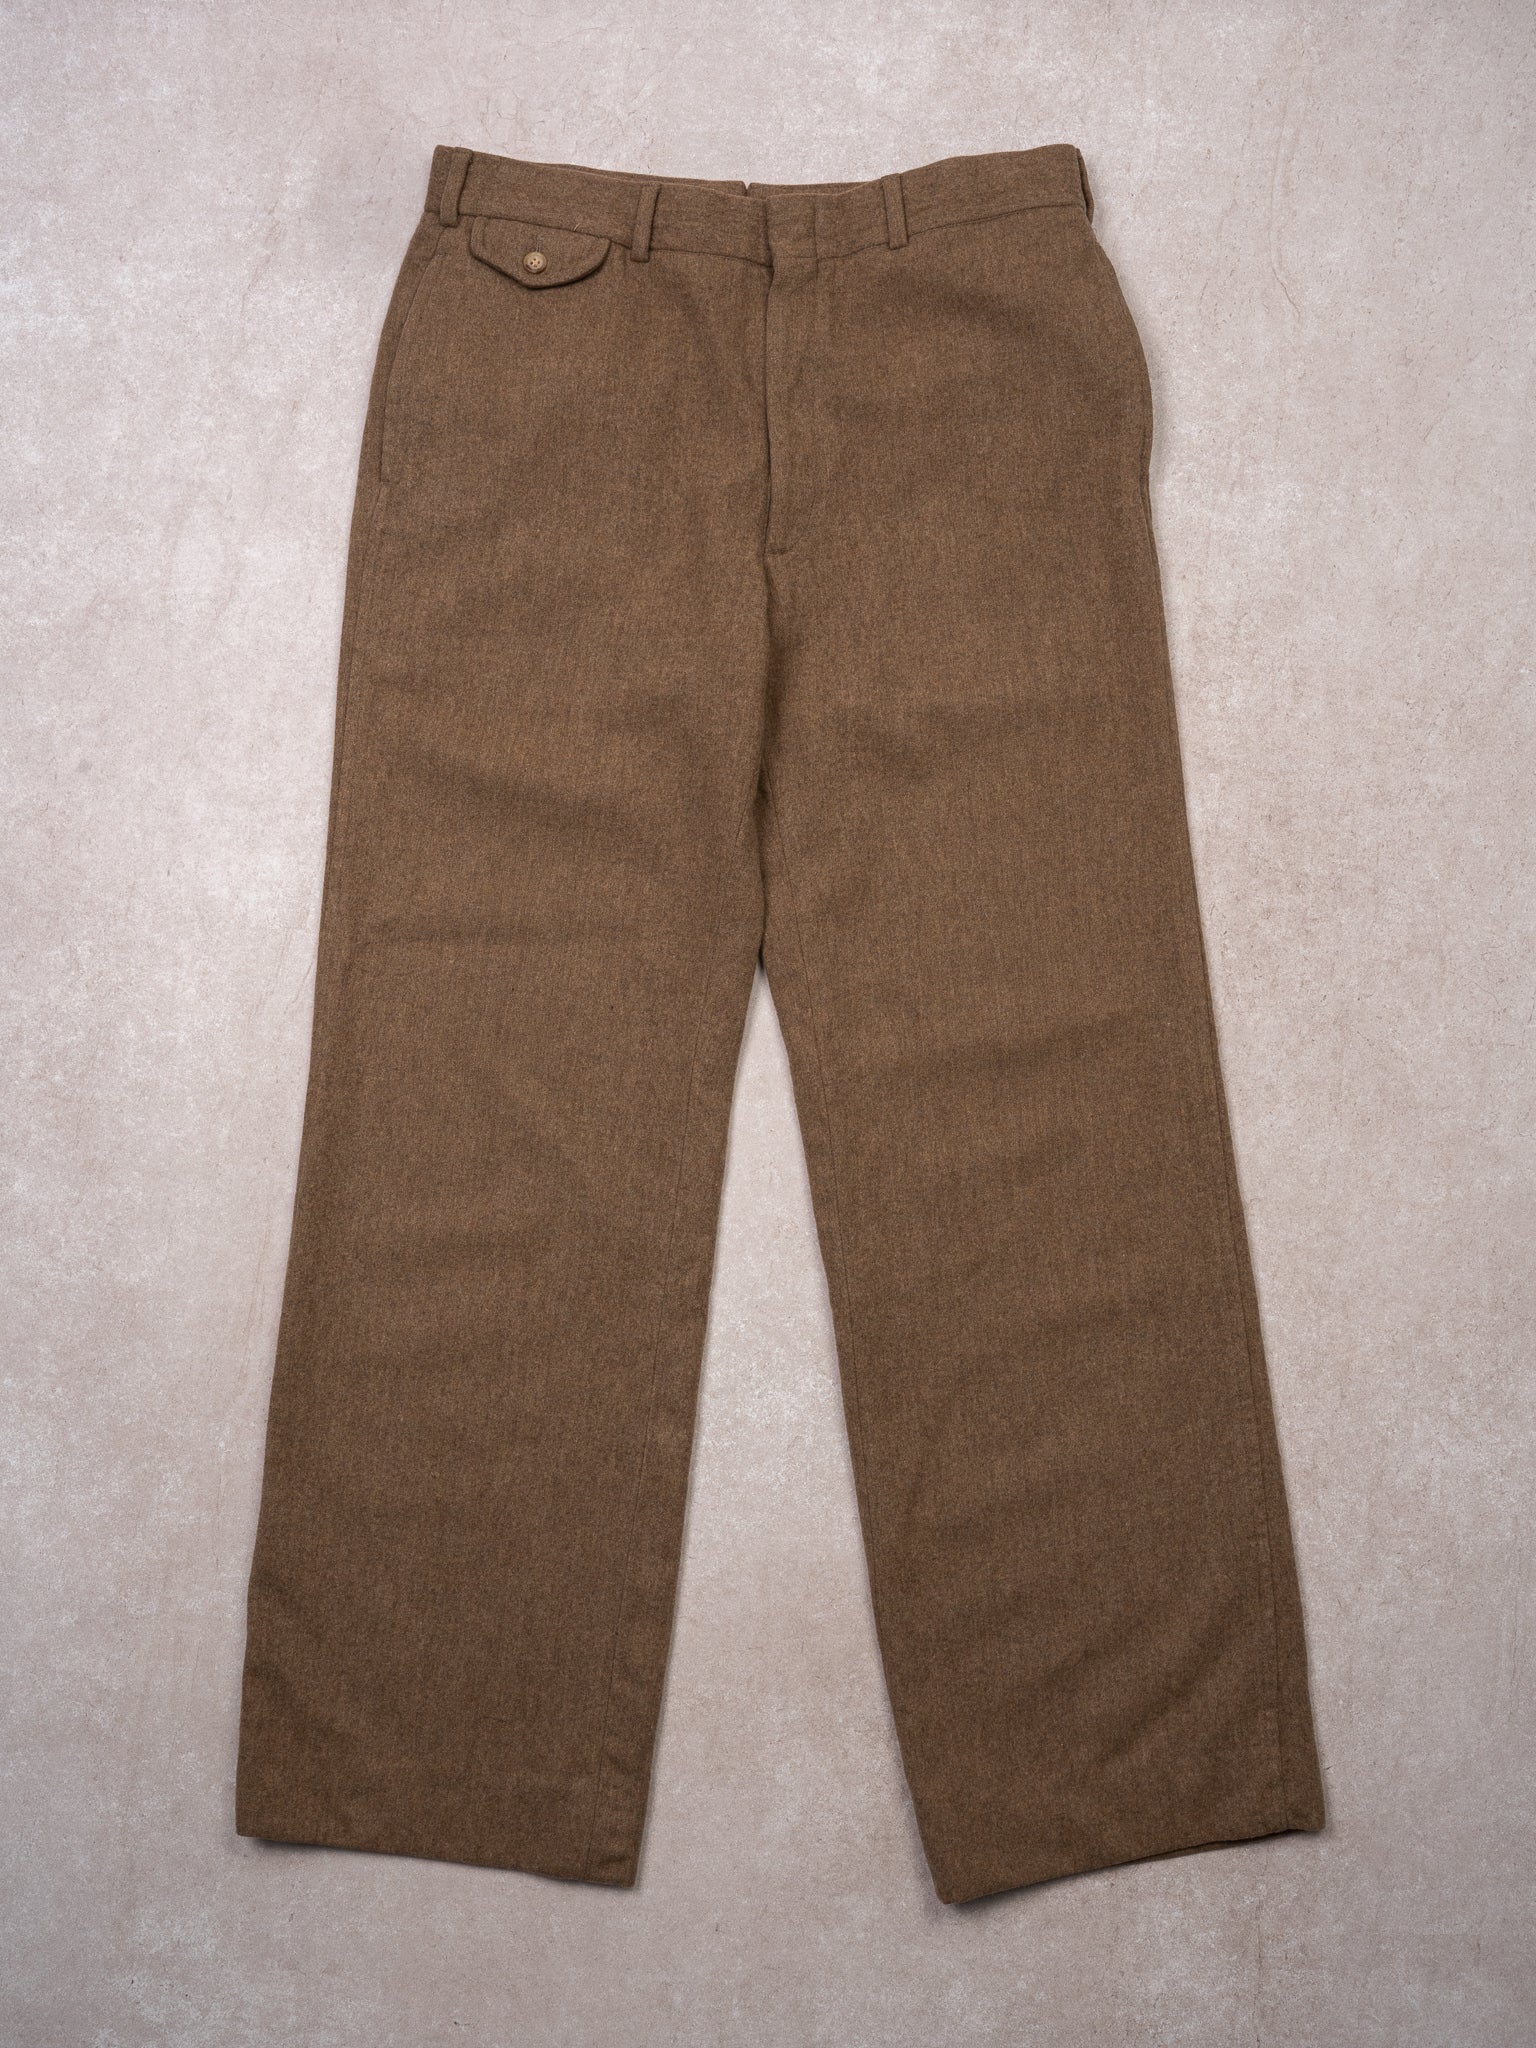 Vintage 70s Polo RL Dark Beige Wool Dress Pants (34 x 31)